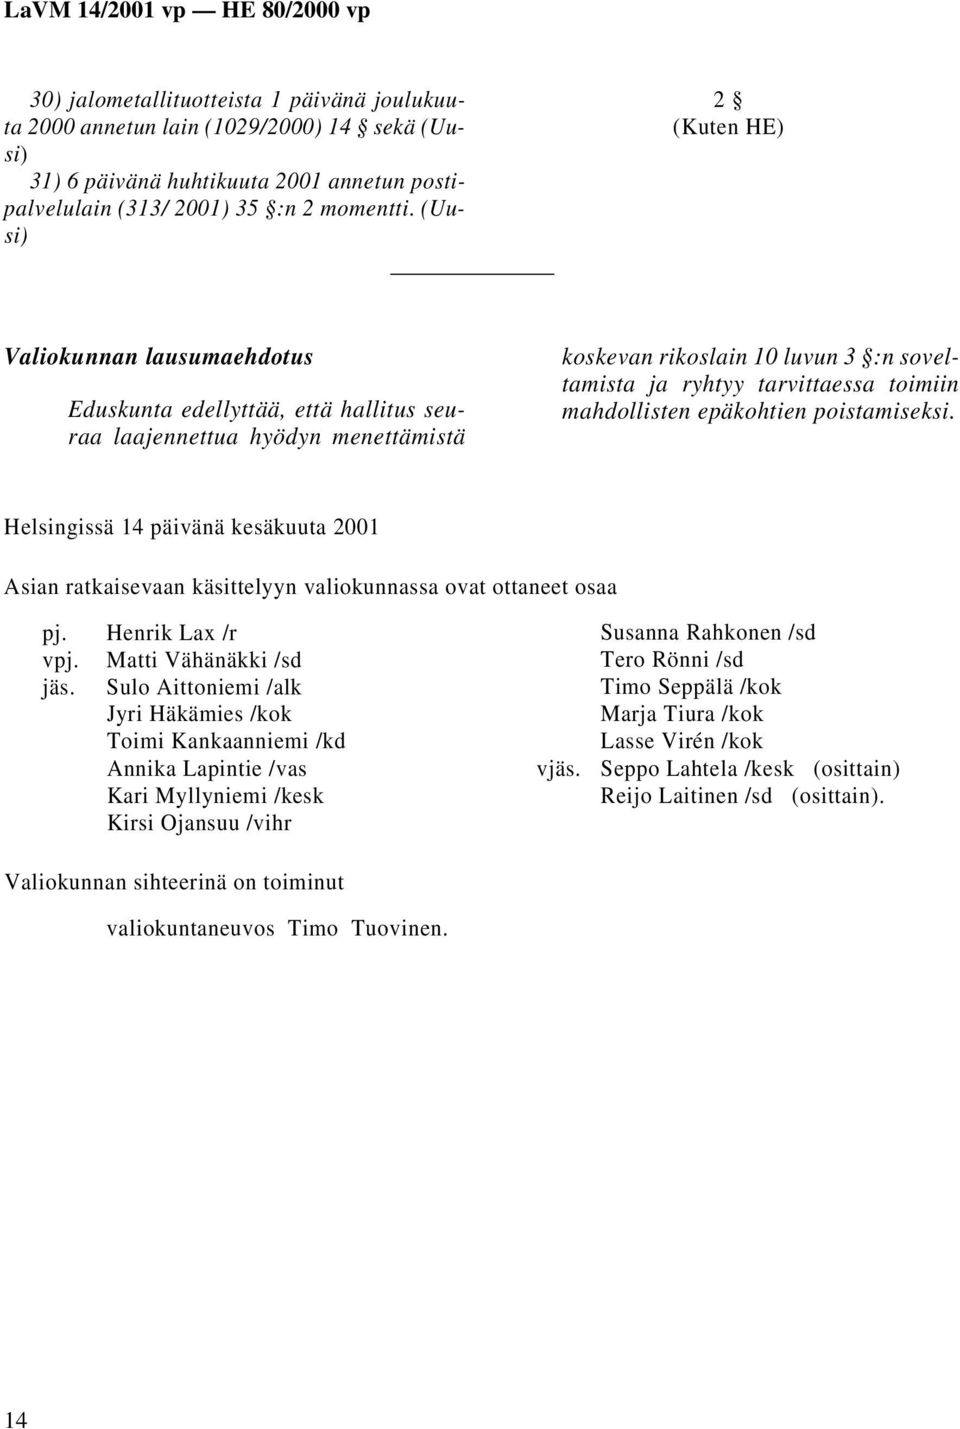 mahdollisten epäkohtien poistamiseksi. Helsingissä 14 päivänä kesäkuuta 2001 Asian ratkaisevaan käsittelyyn valiokunnassa ovat ottaneet osaa pj. Henrik Lax /r vpj. Matti Vähänäkki /sd jäs.